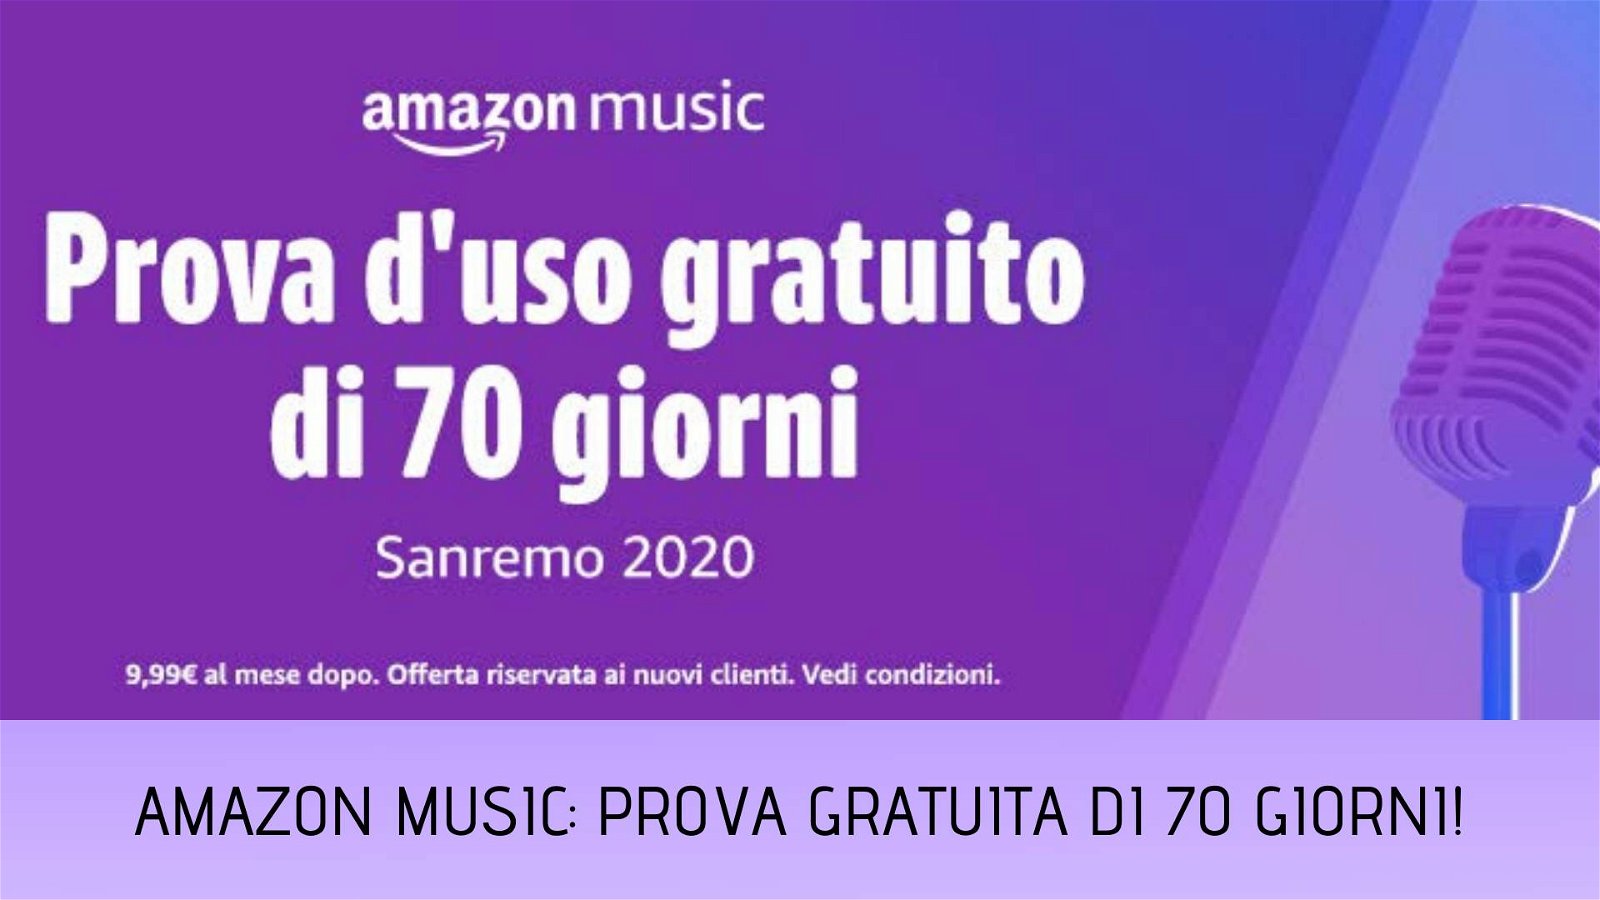 Immagine di 70 giorni gratuiti di Amazon Music Unlimited in occasione di Sanremo, come attivare l'offerta